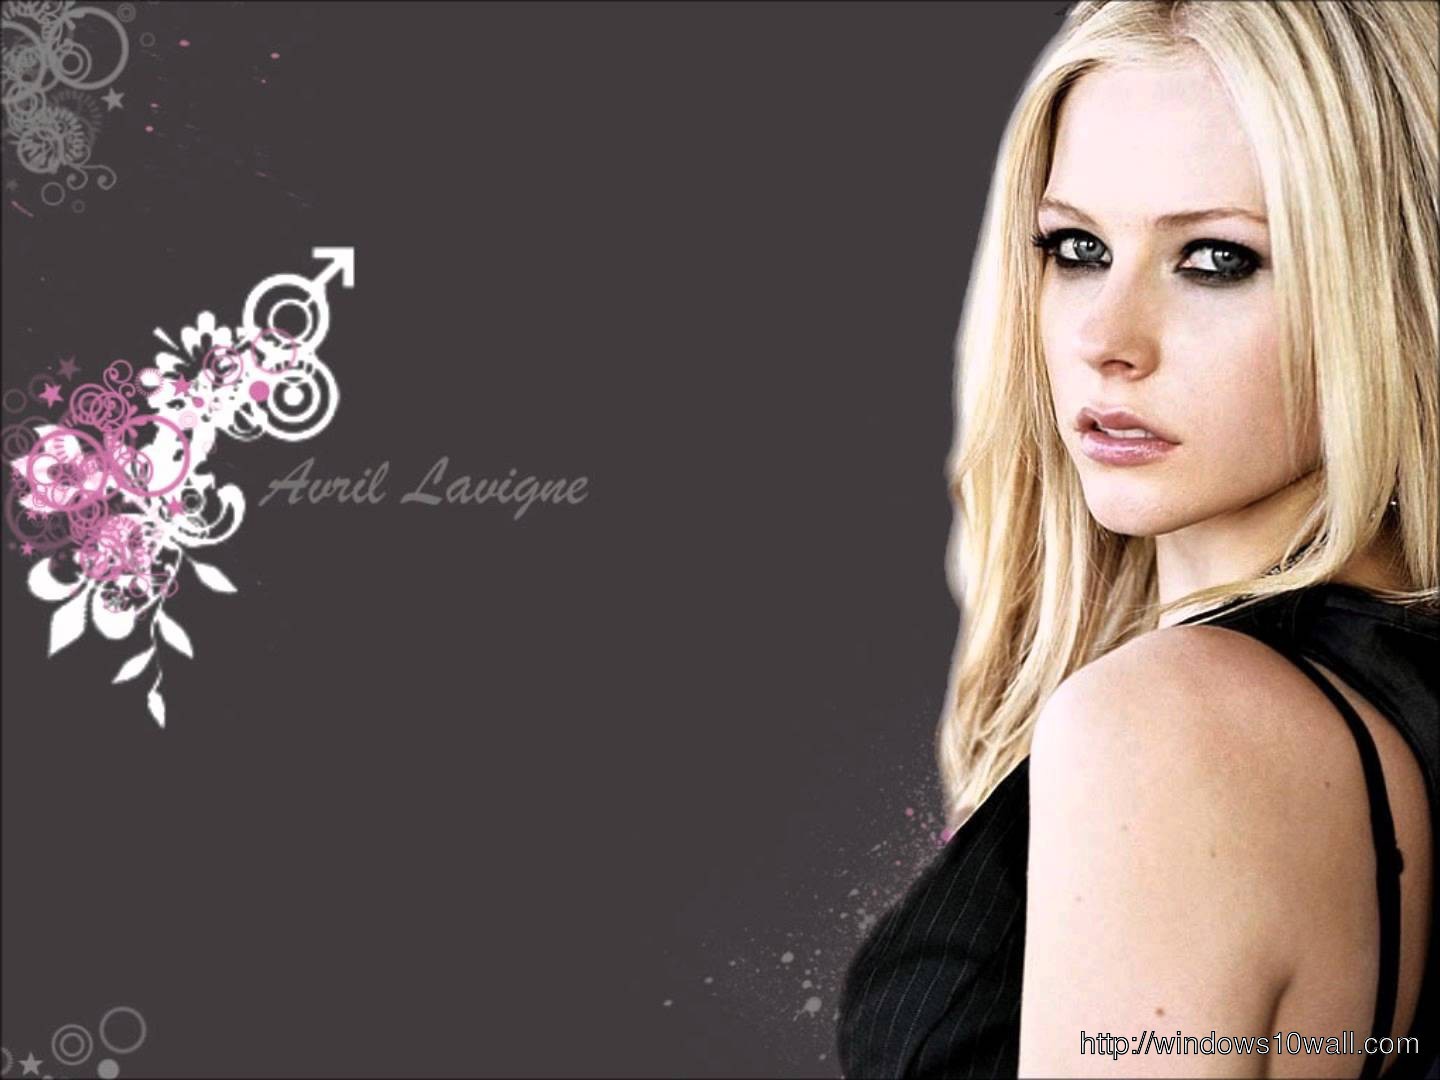 Avril Lavigne Computer Wallpaper Free